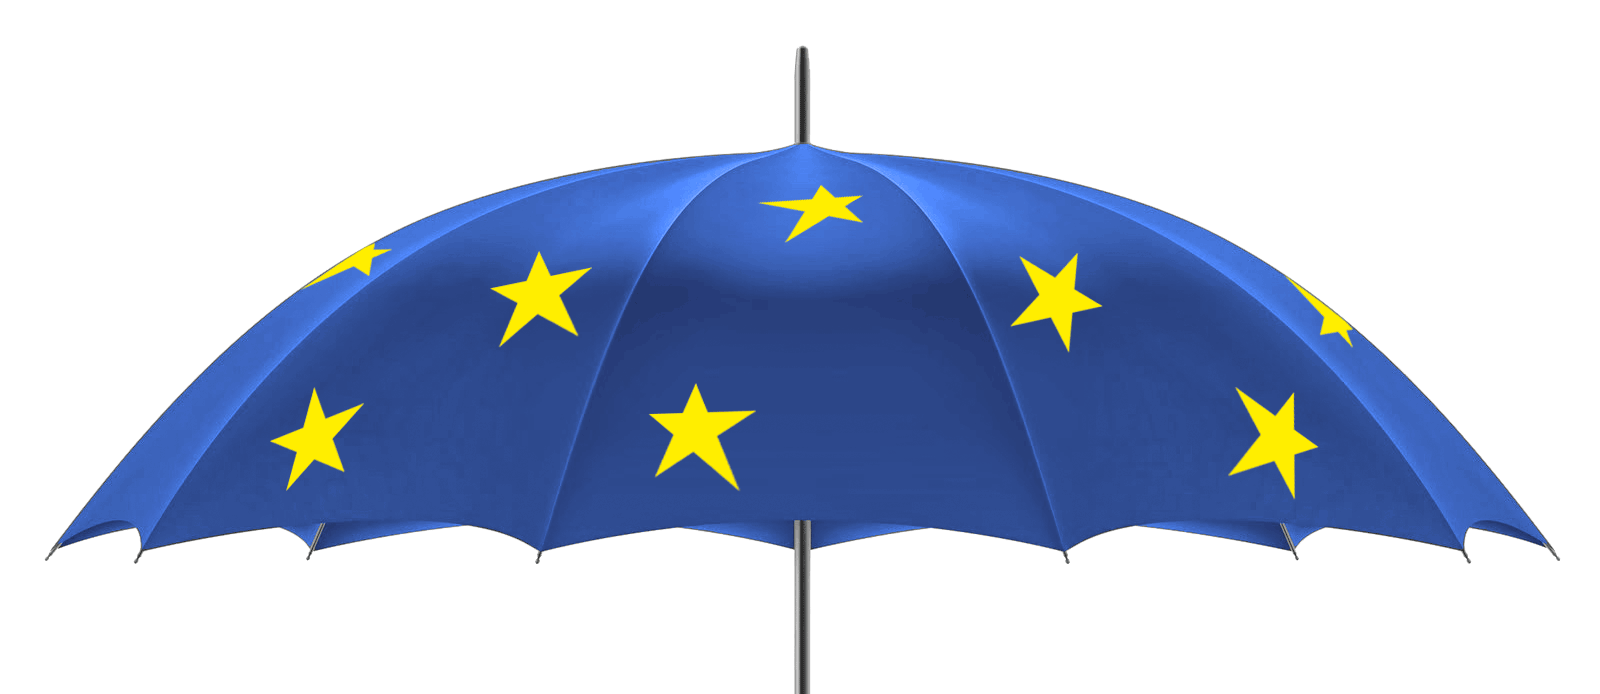 2015-10-06-EU-umbrella_blog